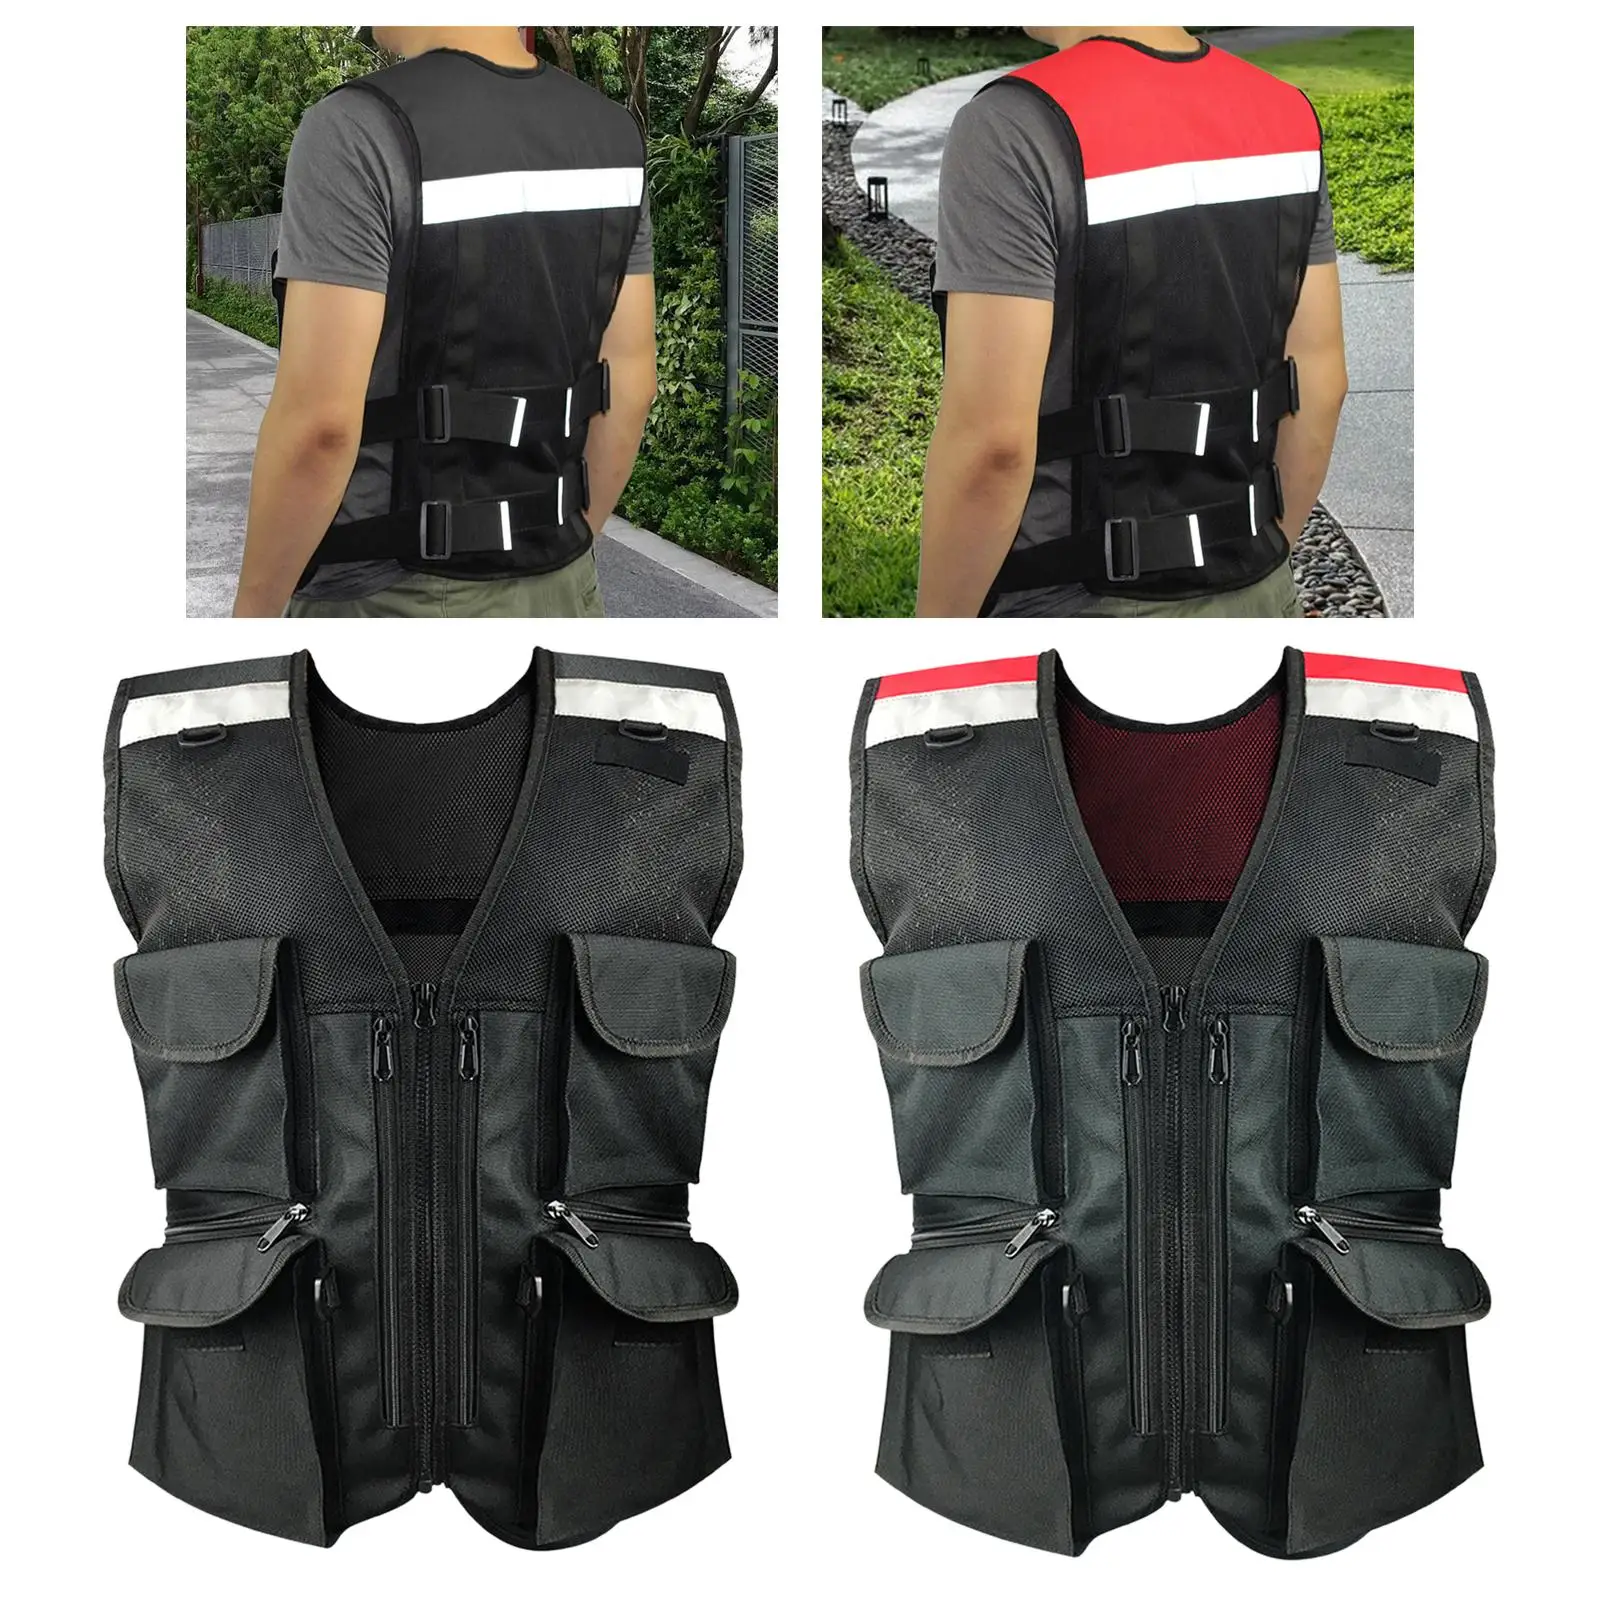 Reflective Safety Vest Multi Pockets Professional Construction Vest